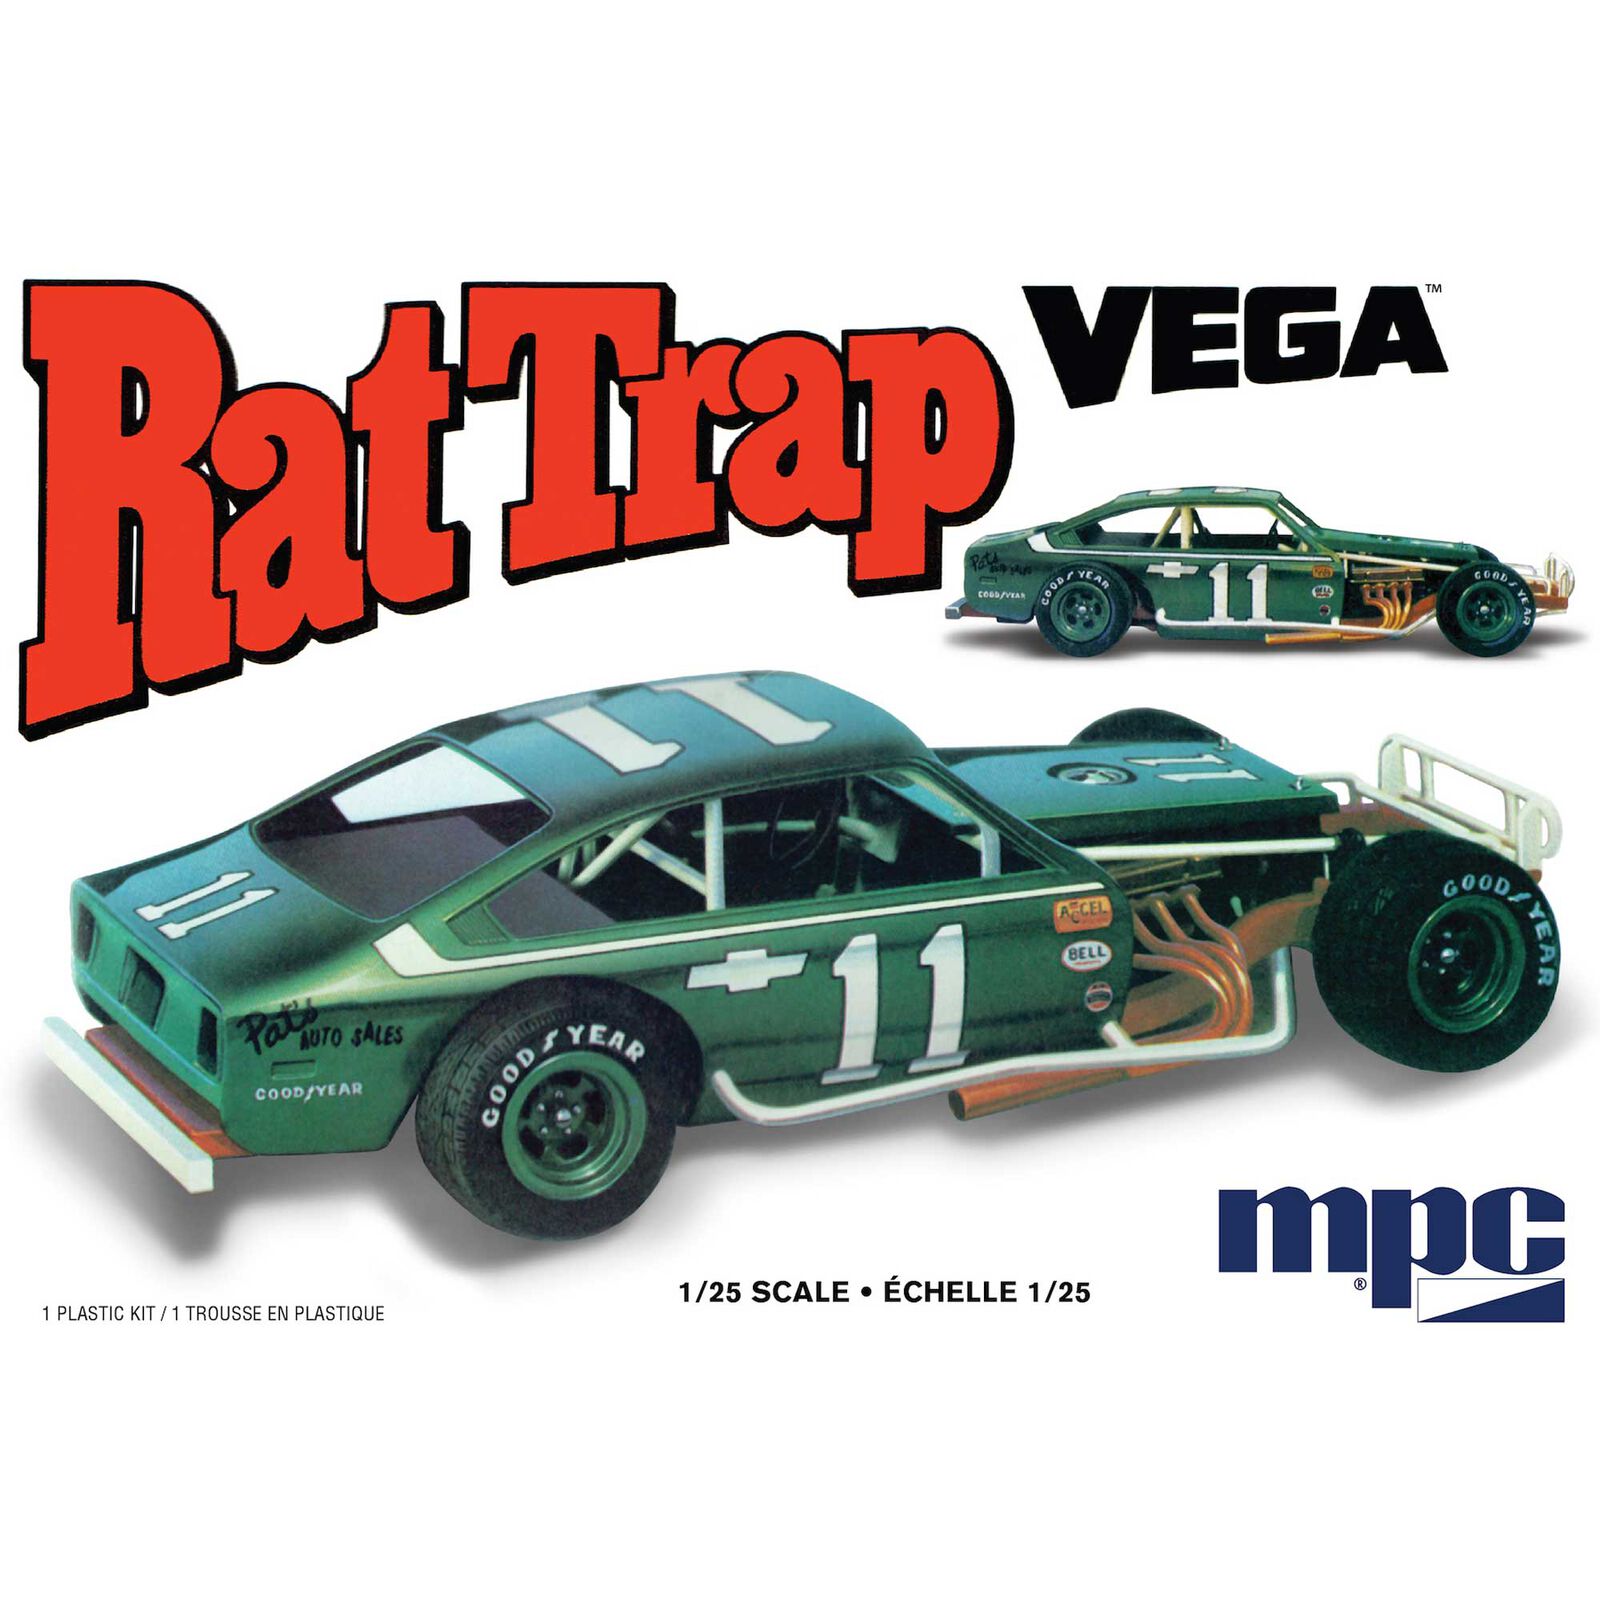 1/25 Chevy Vega Modified Rat Trap 2T